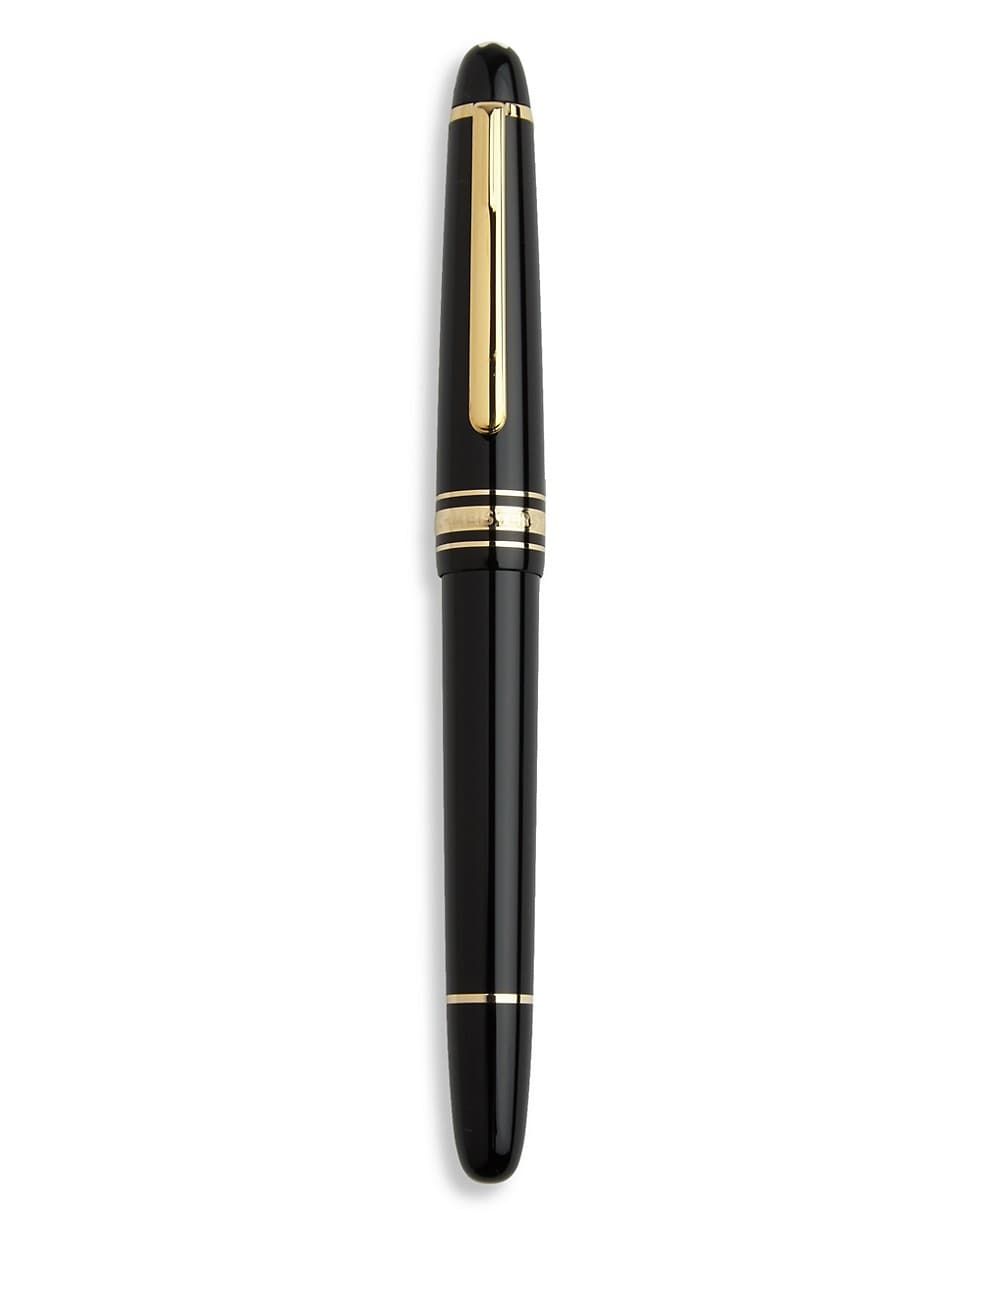 Meisterstück Classique Gold Fountain Pen | Saks Fifth Avenue (UK)